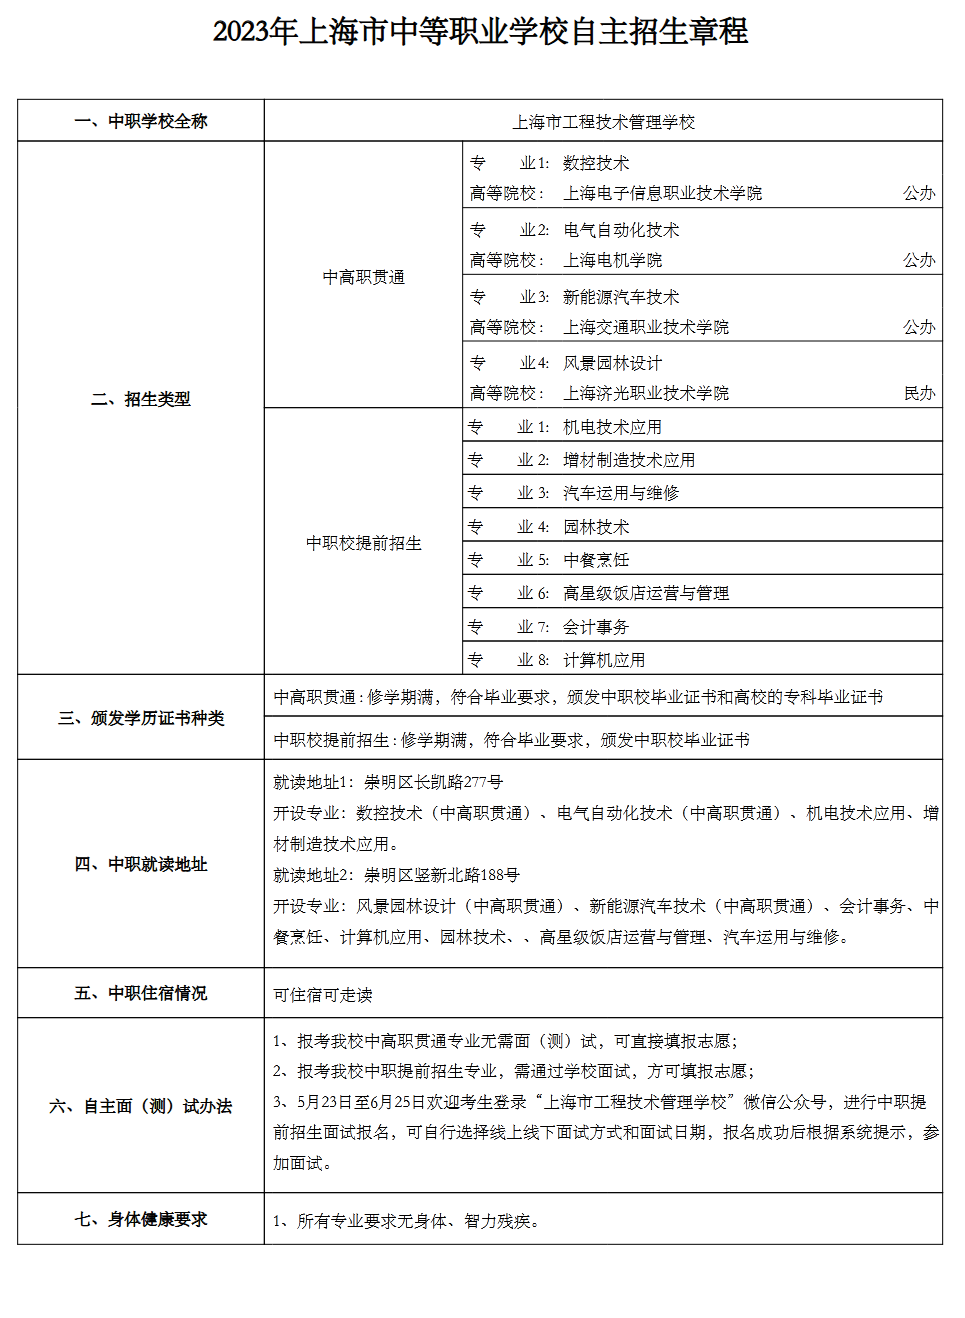 2023年上海工程技术管理学校中考自主招生计划